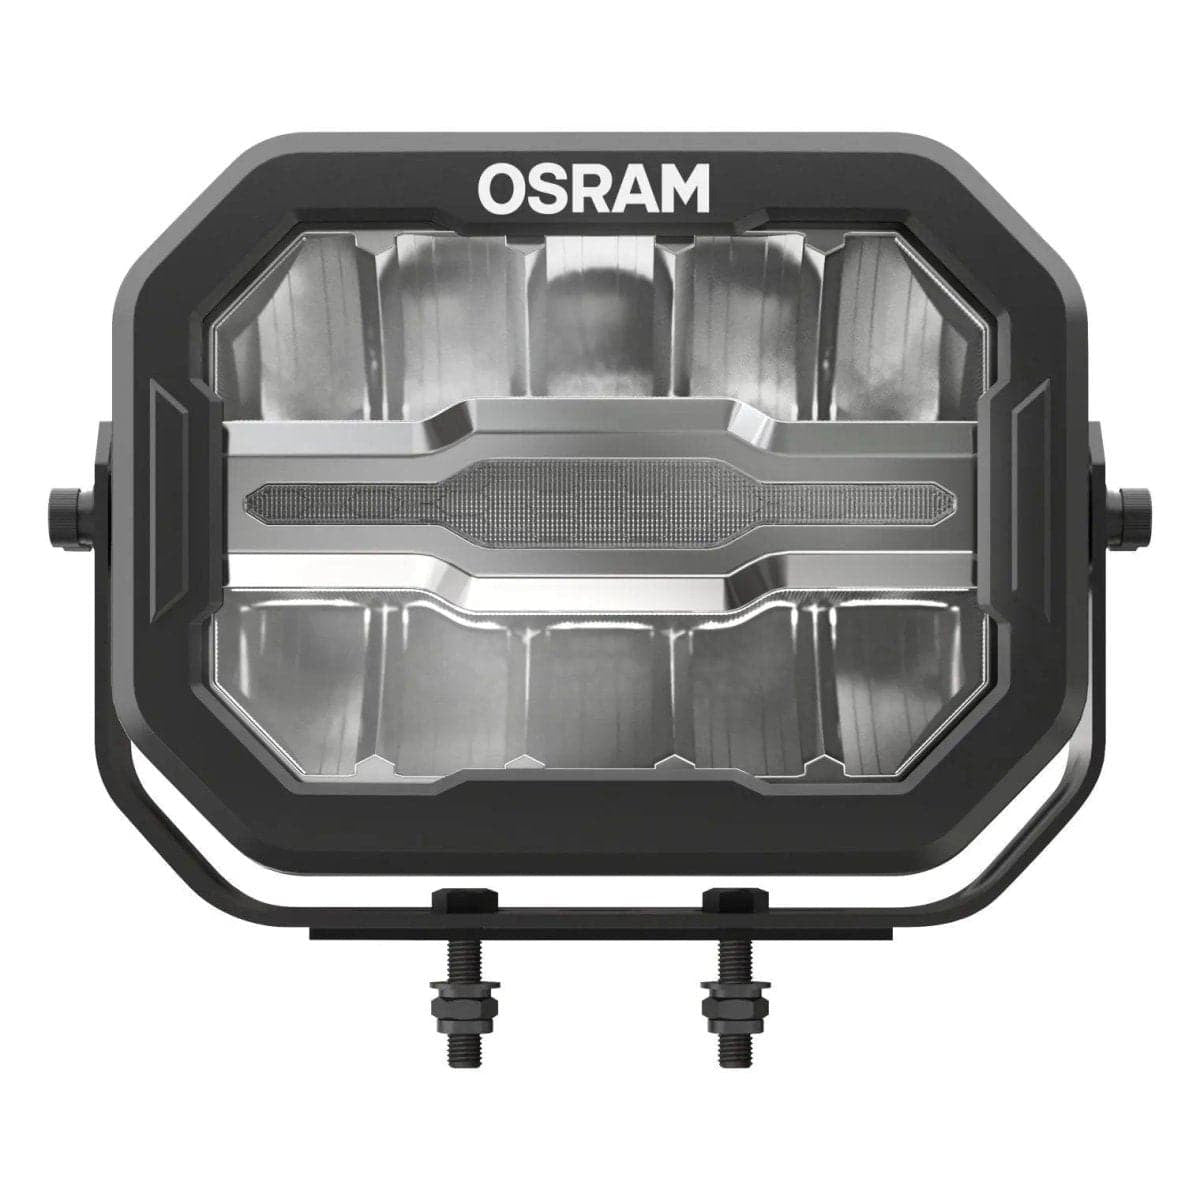 OSRAM MX240-CB LEDDL113-CB - VanBro.de